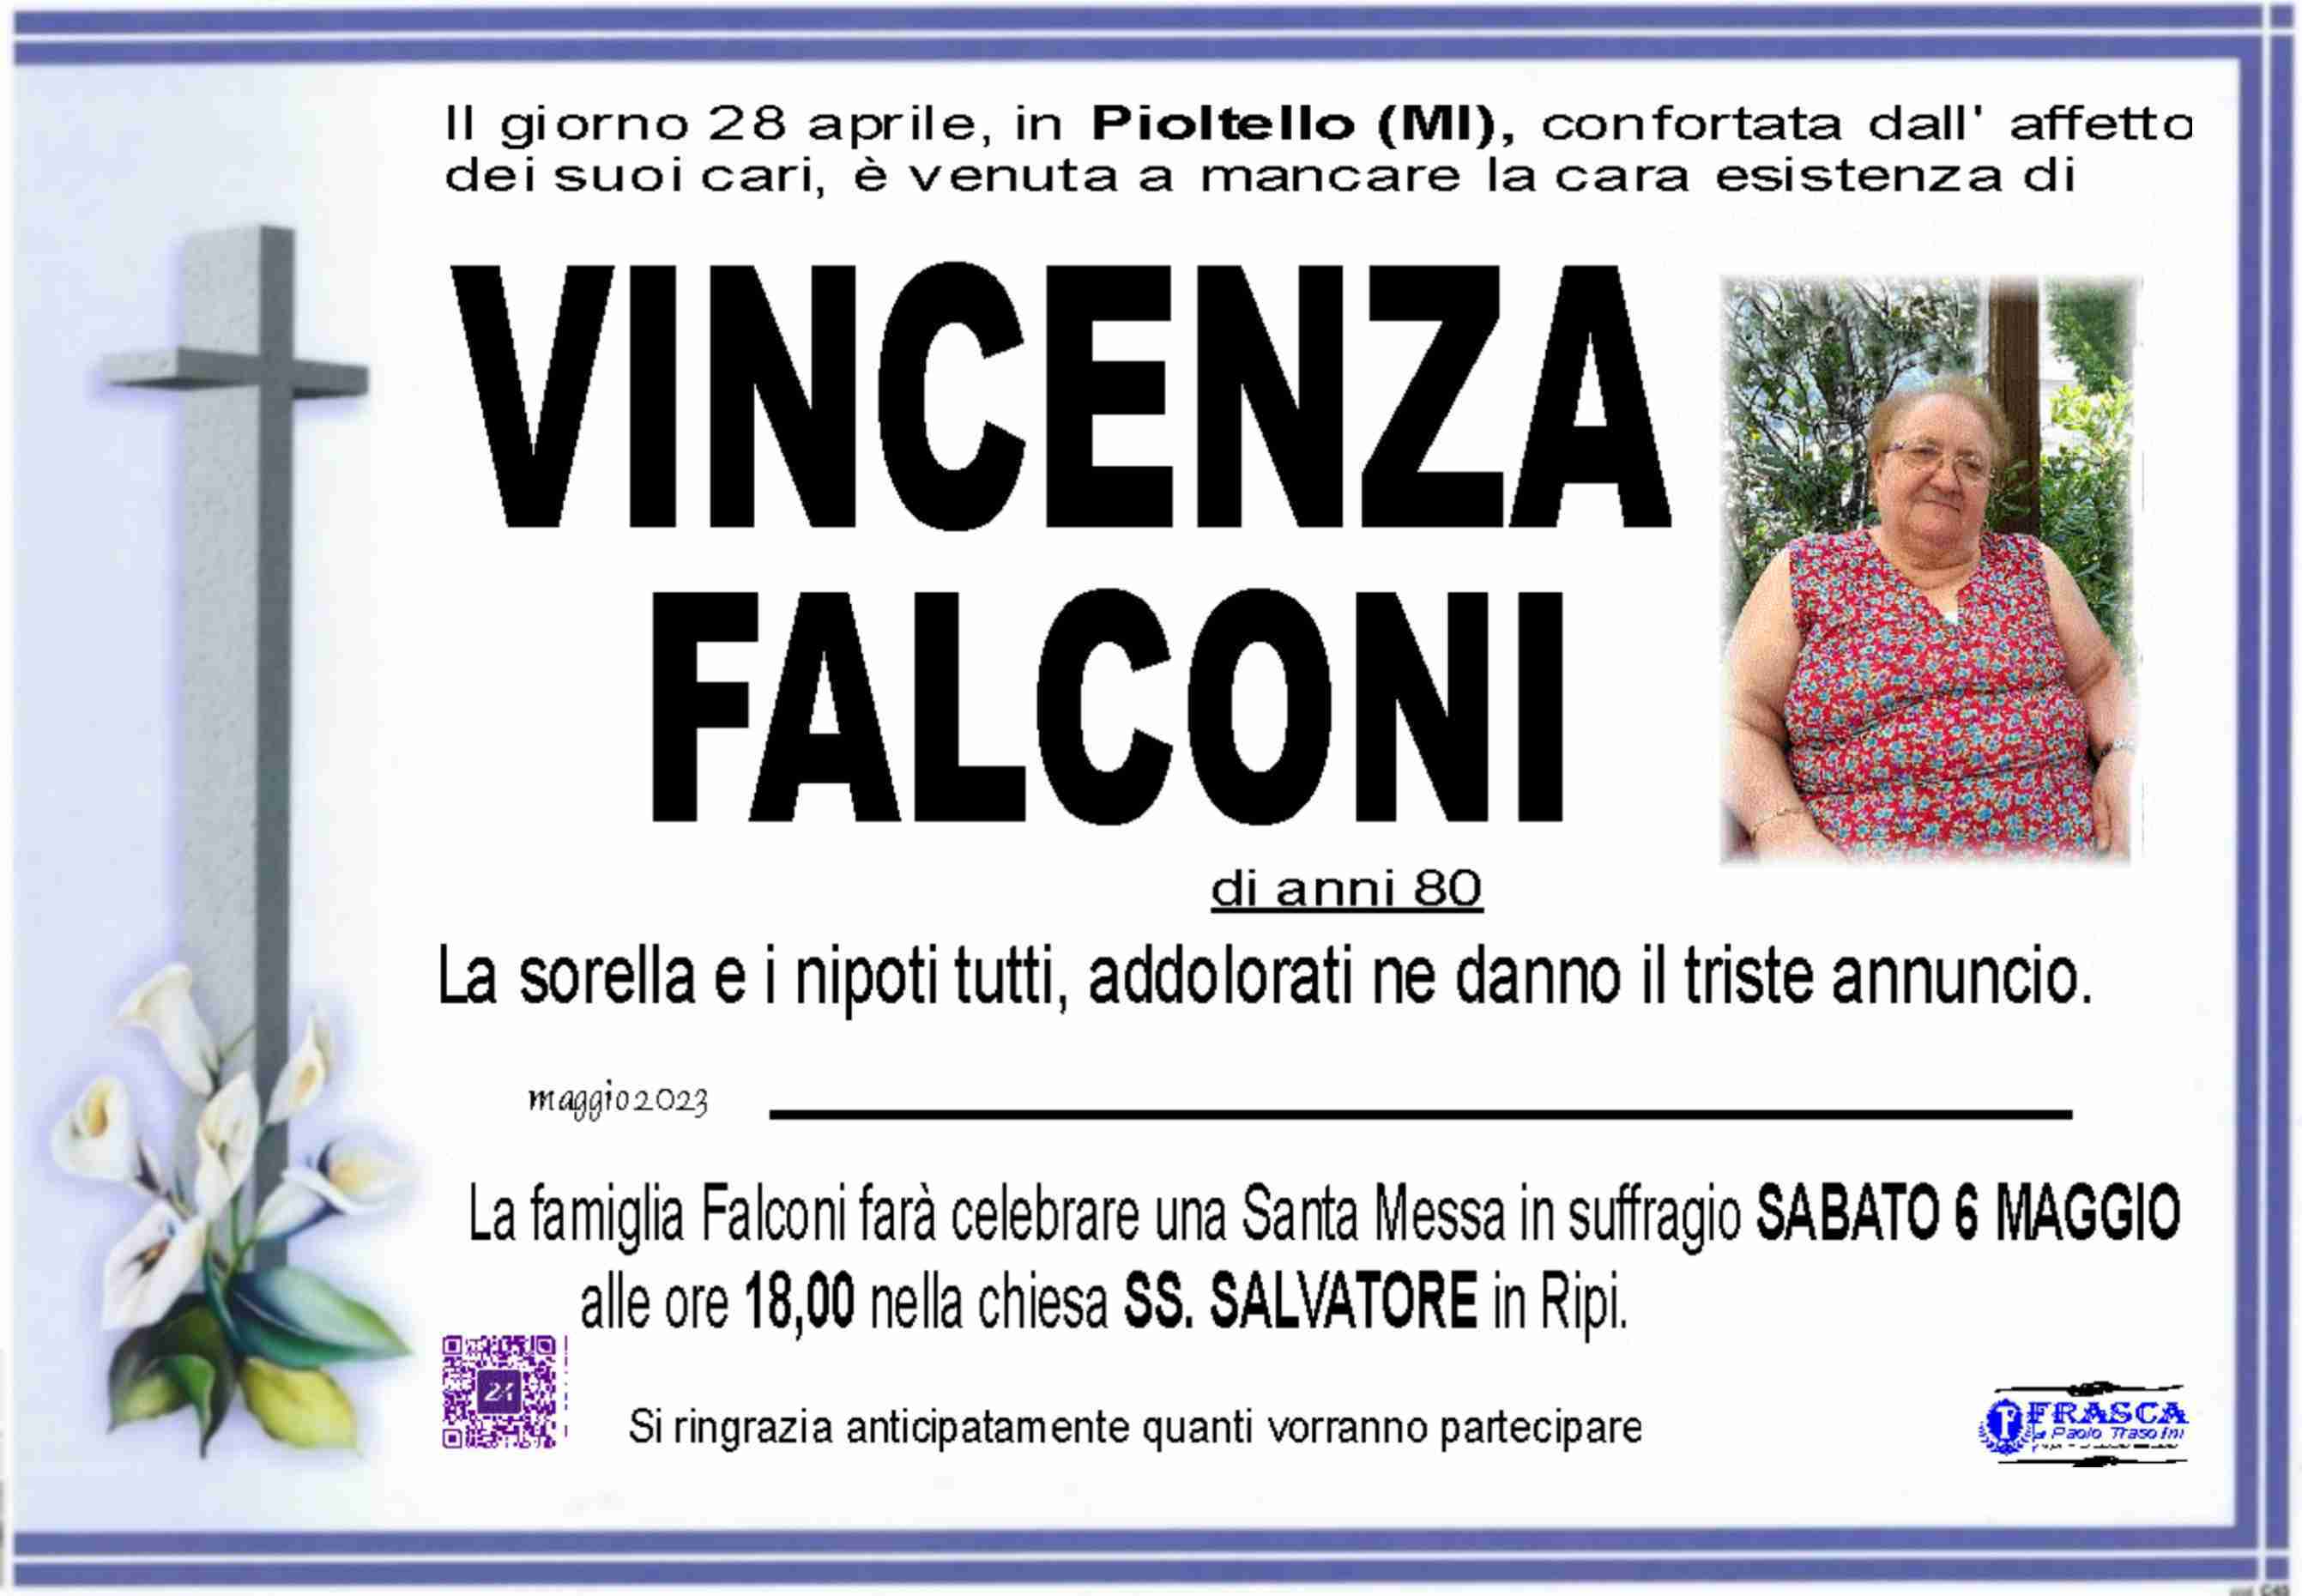 Vincenza Falconi